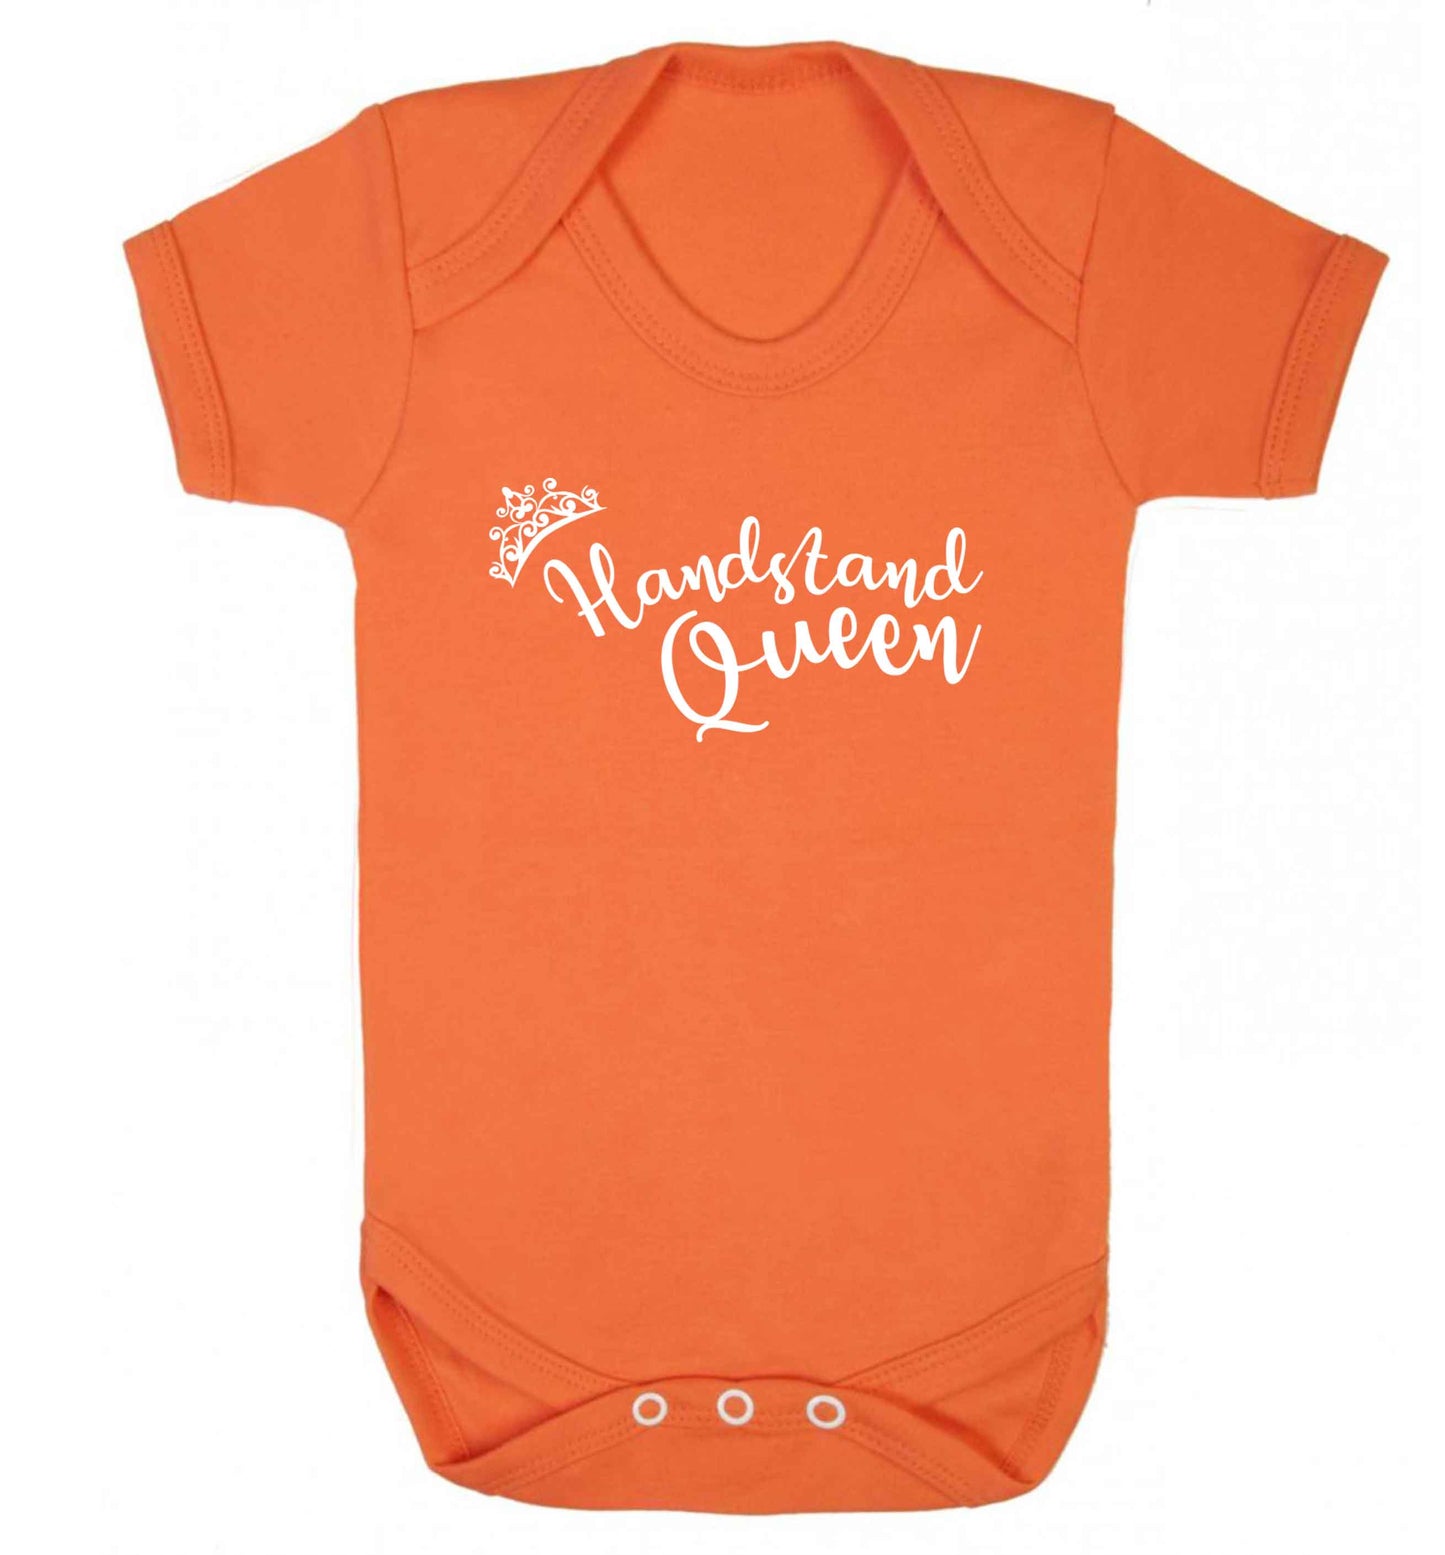 Handstand Queen Baby Vest orange 18-24 months